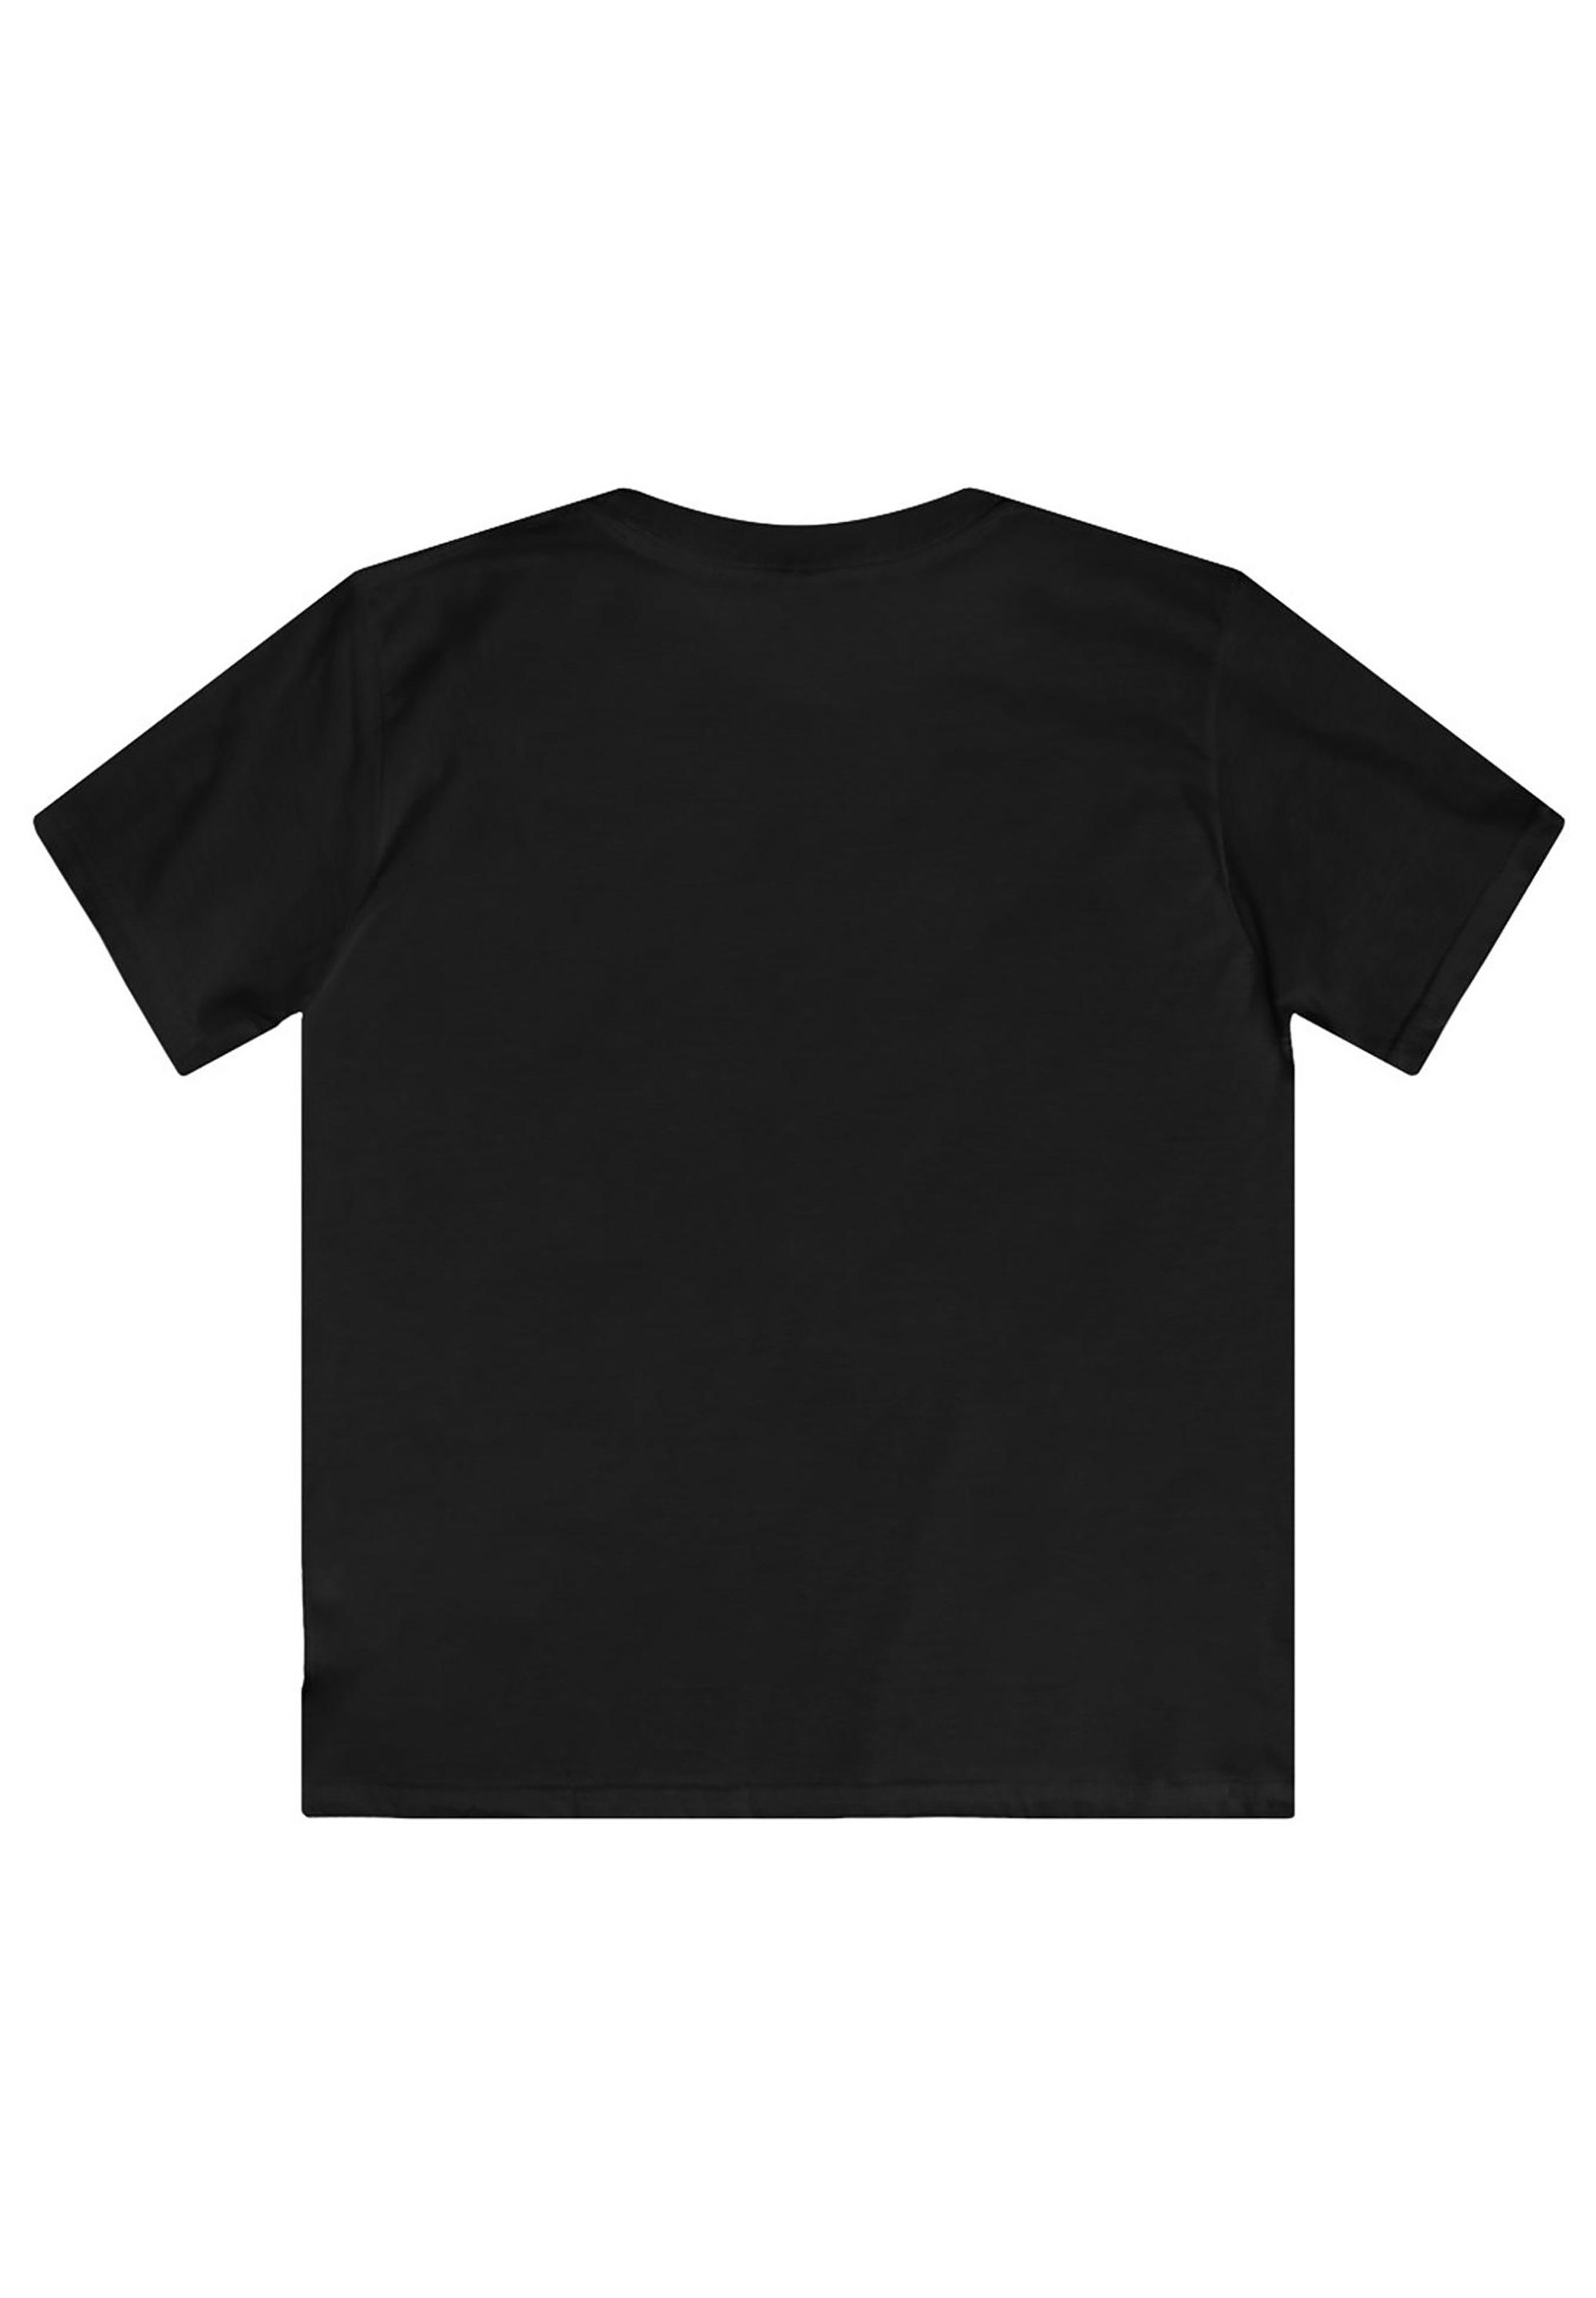 F4NT4STIC T-Shirt ACDC Rock or für Print & Kinder Bust Herren